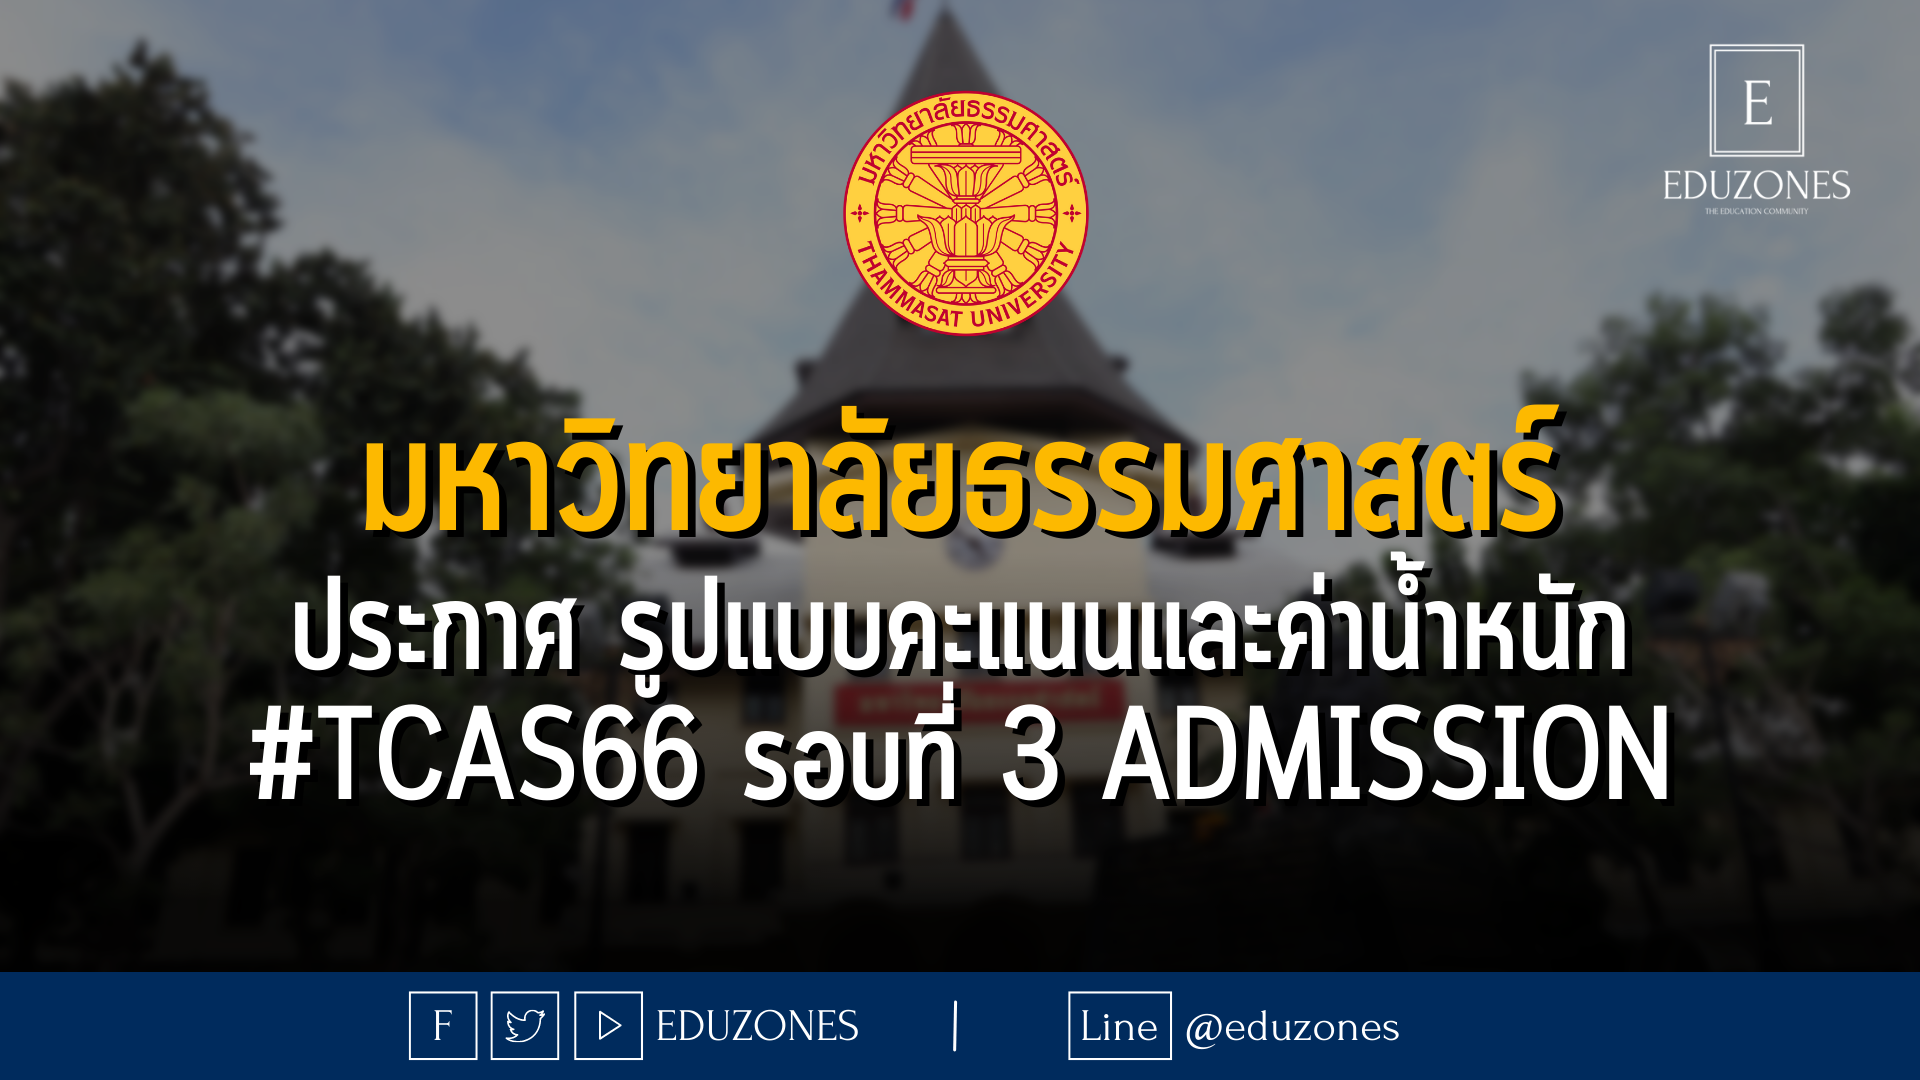 มหาวิทยาลัยธรรมศาสตร์ ประกาศ รูปแบบคะแนนและค่าน้ำหนัก #TCAS66 รอบที่ 3 ADMISSION